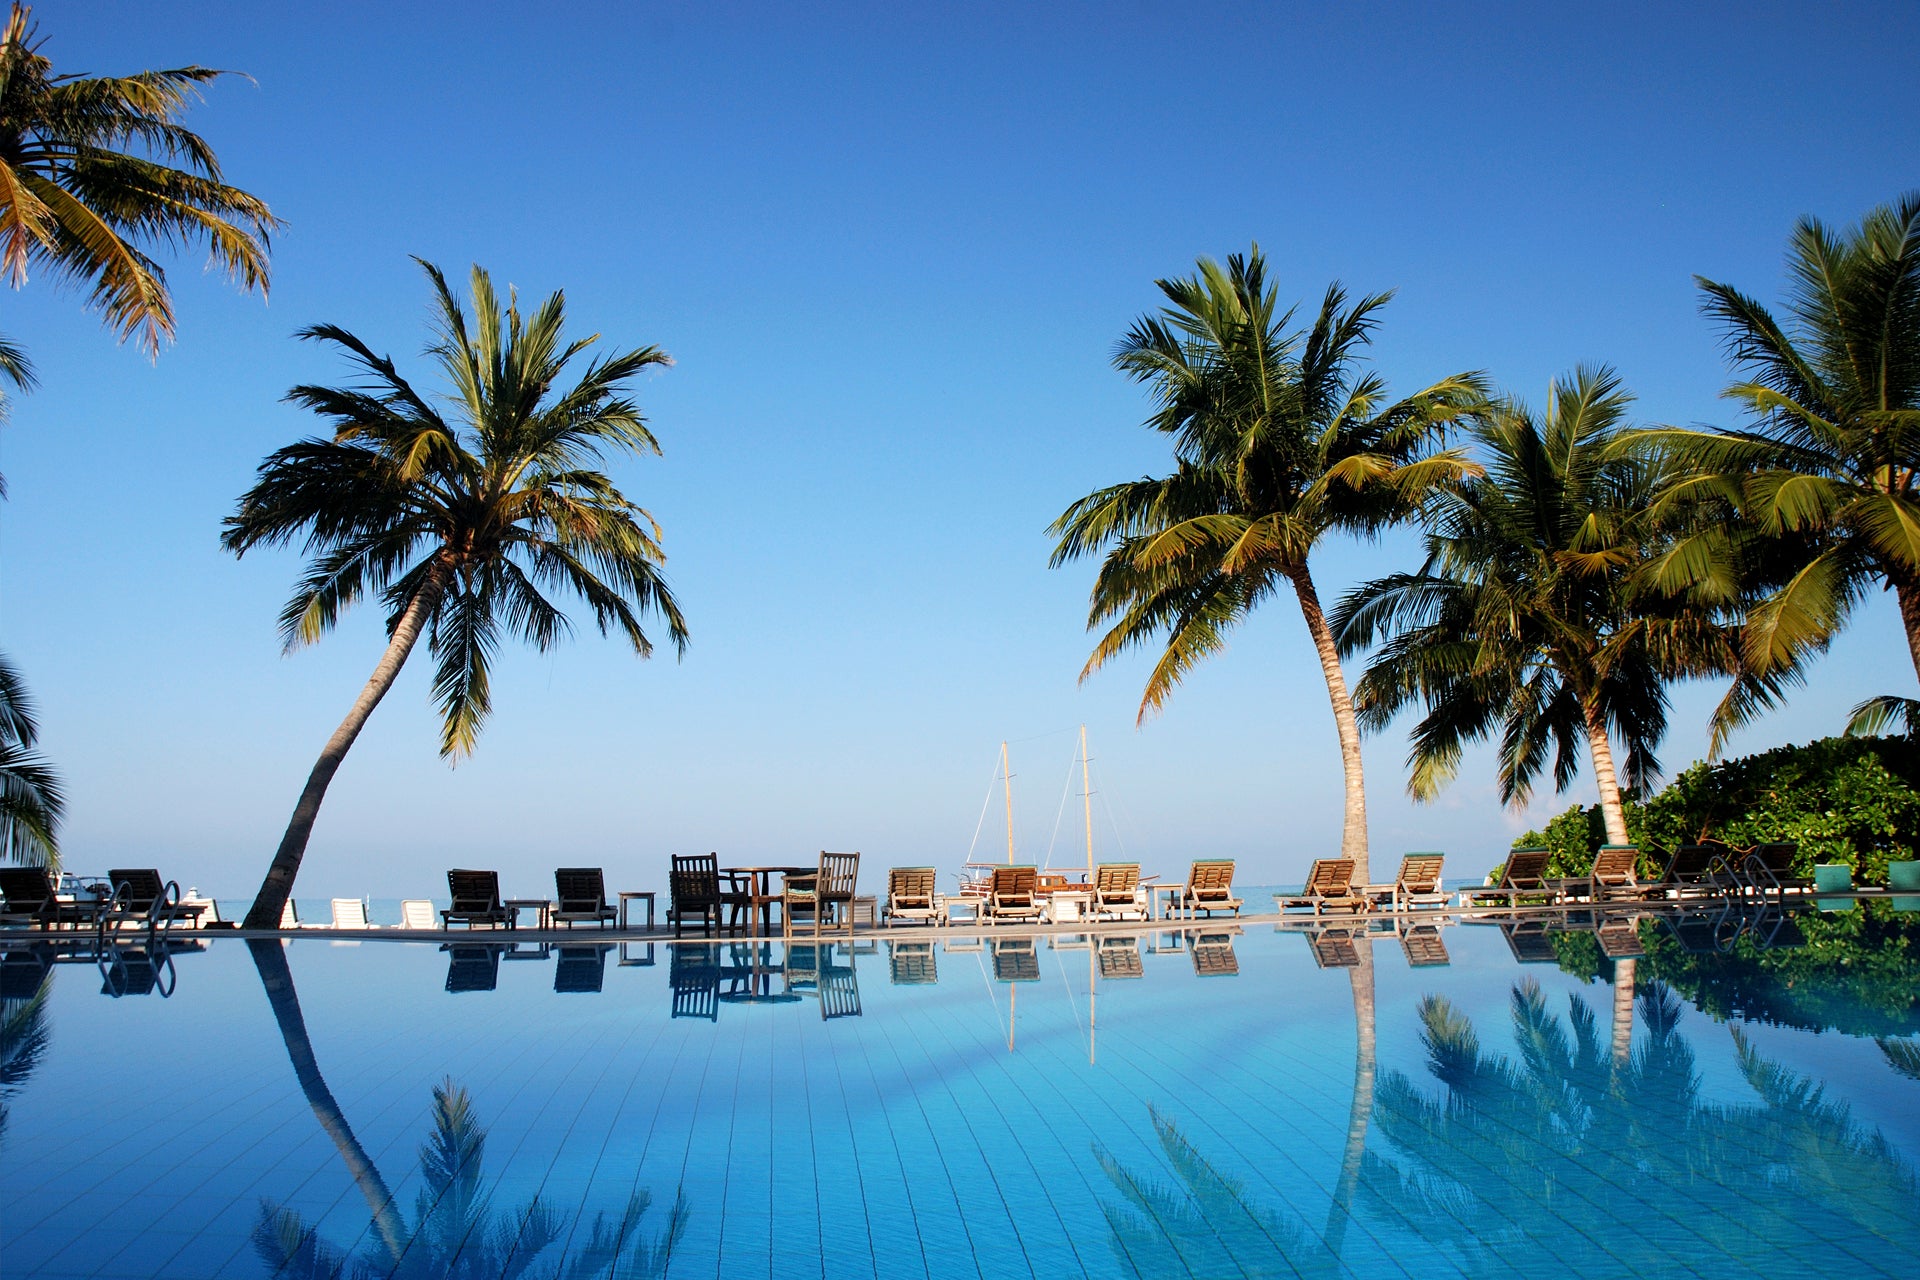 Vacanza di relax alle Maldive tra spiagge e piscine